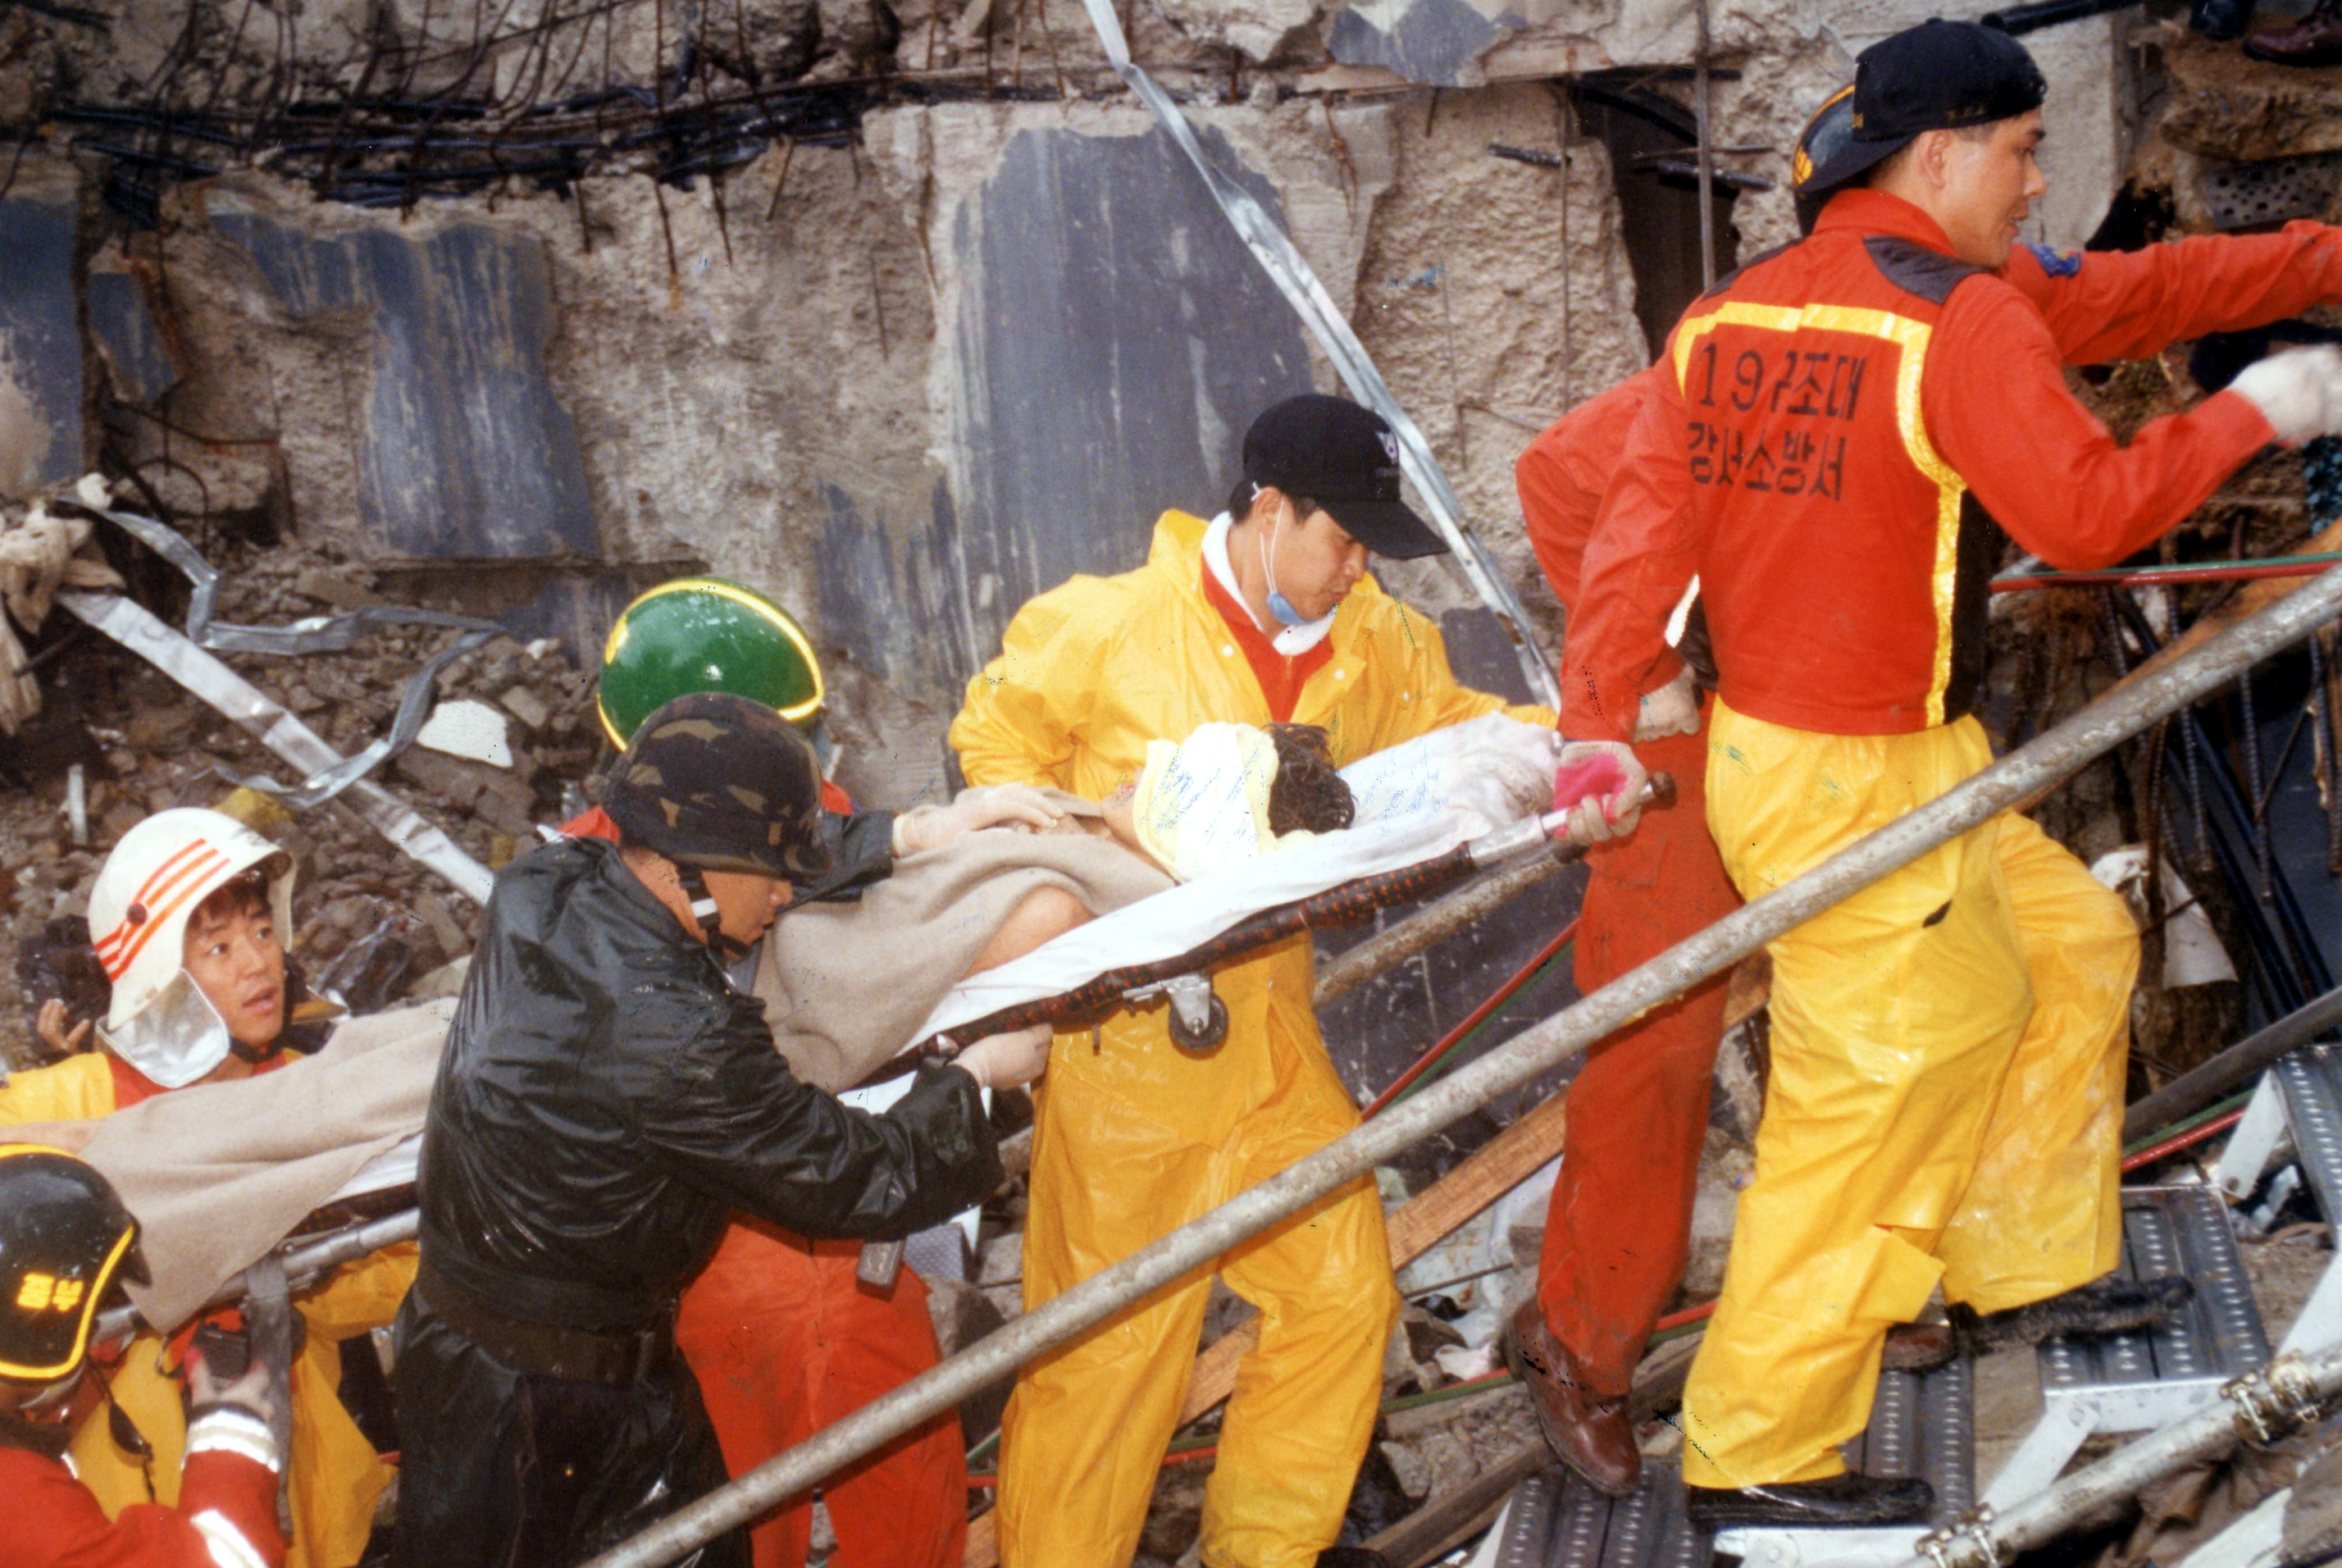 1995년 6월 29일 오후 5시 52분경 서울 서초동 소재 삼풍백화점이 부실공사 등의 원인으로 갑자기 붕괴되어 사망 502명, 실종 6명, 부상 937명이 발생한 사고. 한국전쟁 이후 가장 큰 인적 피해였다. 재산 피해액은 2,700여 억으로 추정되었다. 이 붕괴사고와 관련하여 삼풍그룹 회장 이준 등 백화점 관계자와 공무원 등 25명이 기소되었다.이 사고를 계기로 건물들에 대한 안전 평가가 실시되었고, 긴급구조구난체계의 문제점이 노출되어 119중앙구조대가 서울·부산·광주에 설치되었다.1995.6.29 서울신문 특별취재반